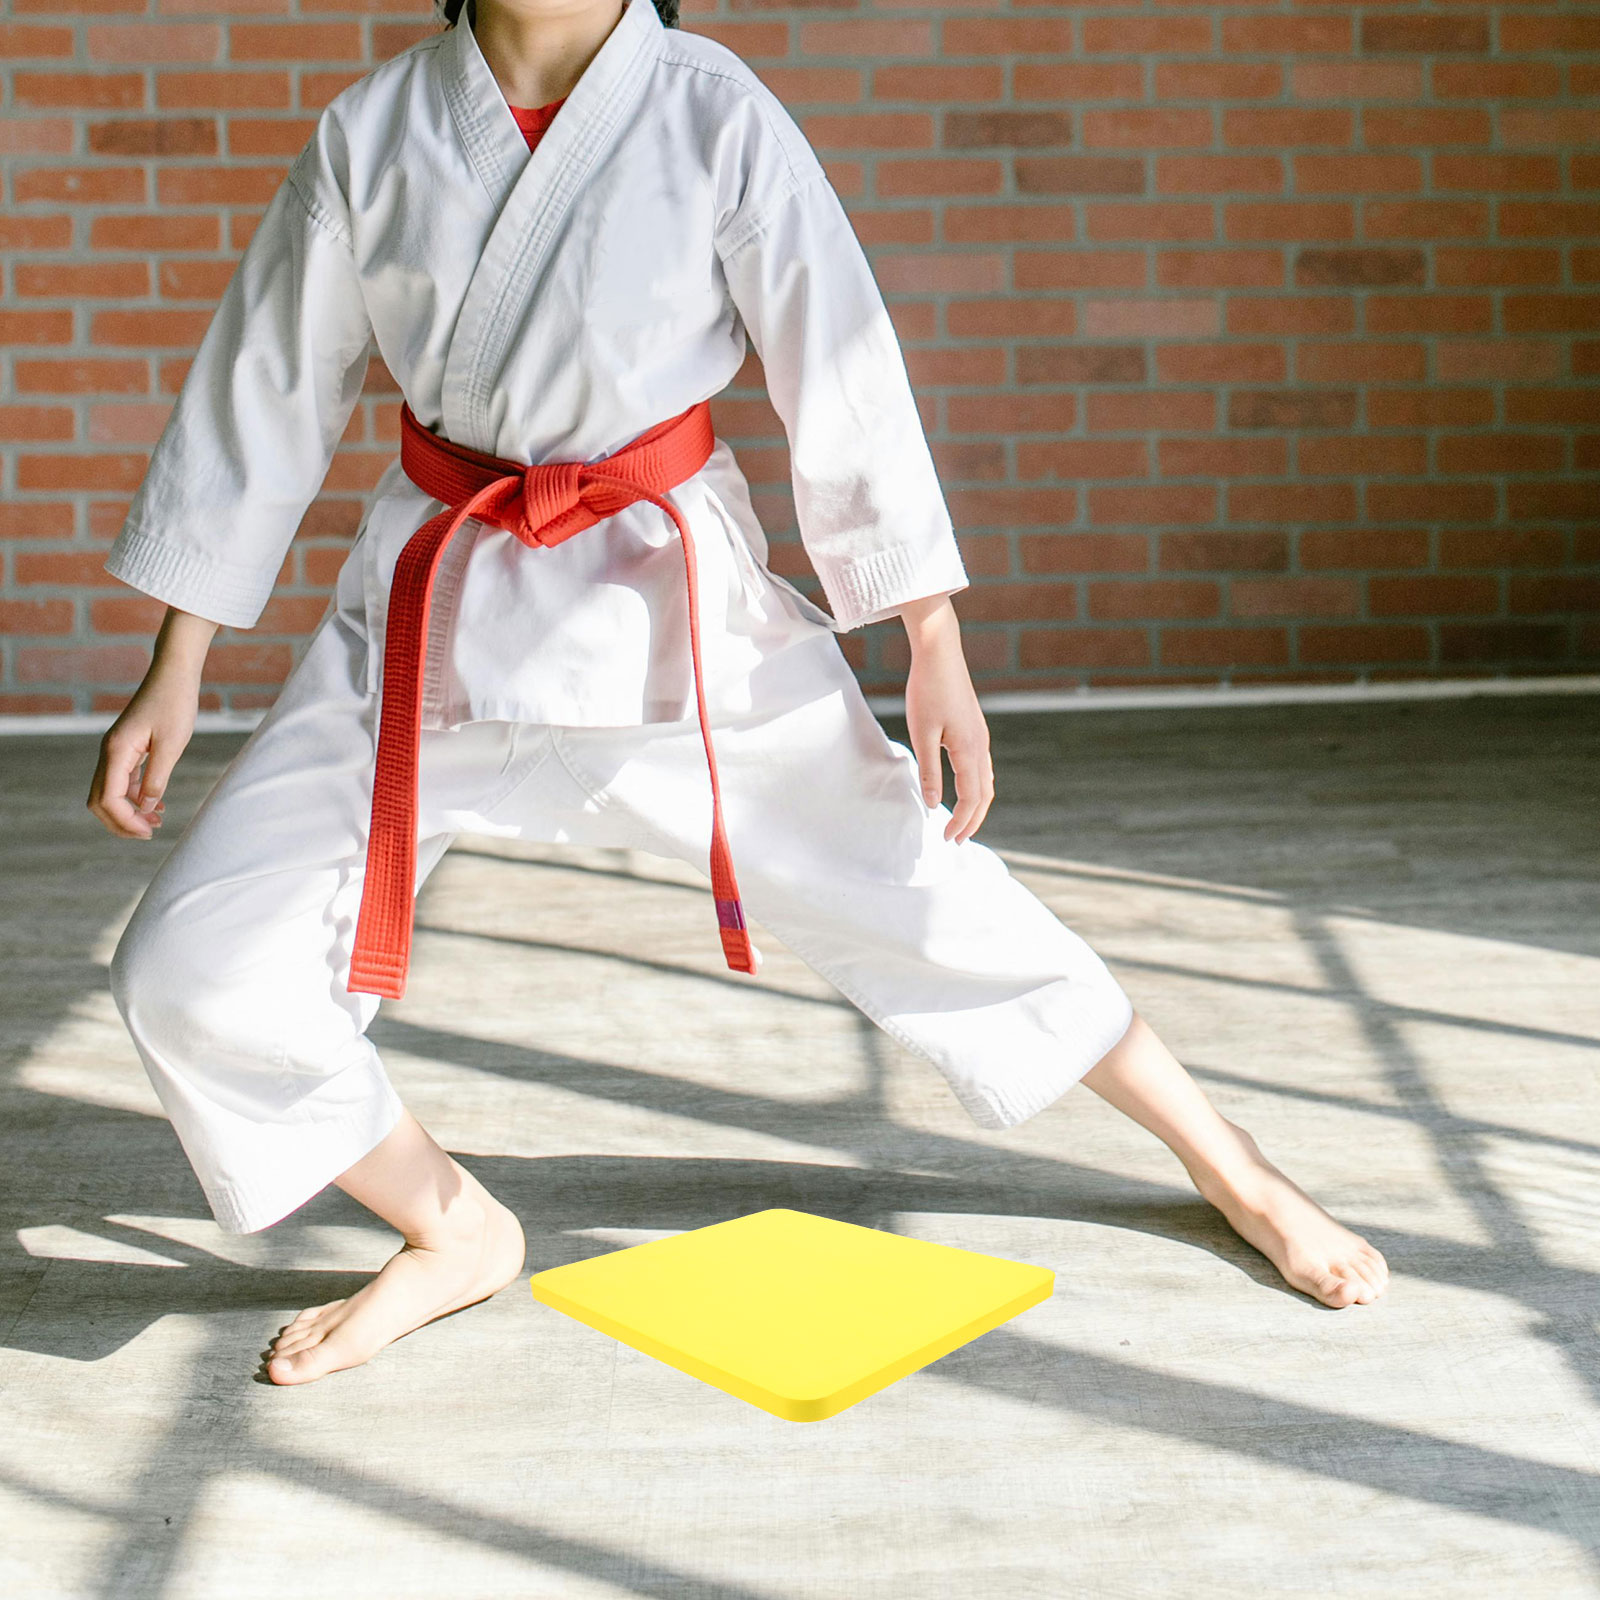 Foam Board Training Breaking Boards Sheet Taekwondo Performing Karate ...